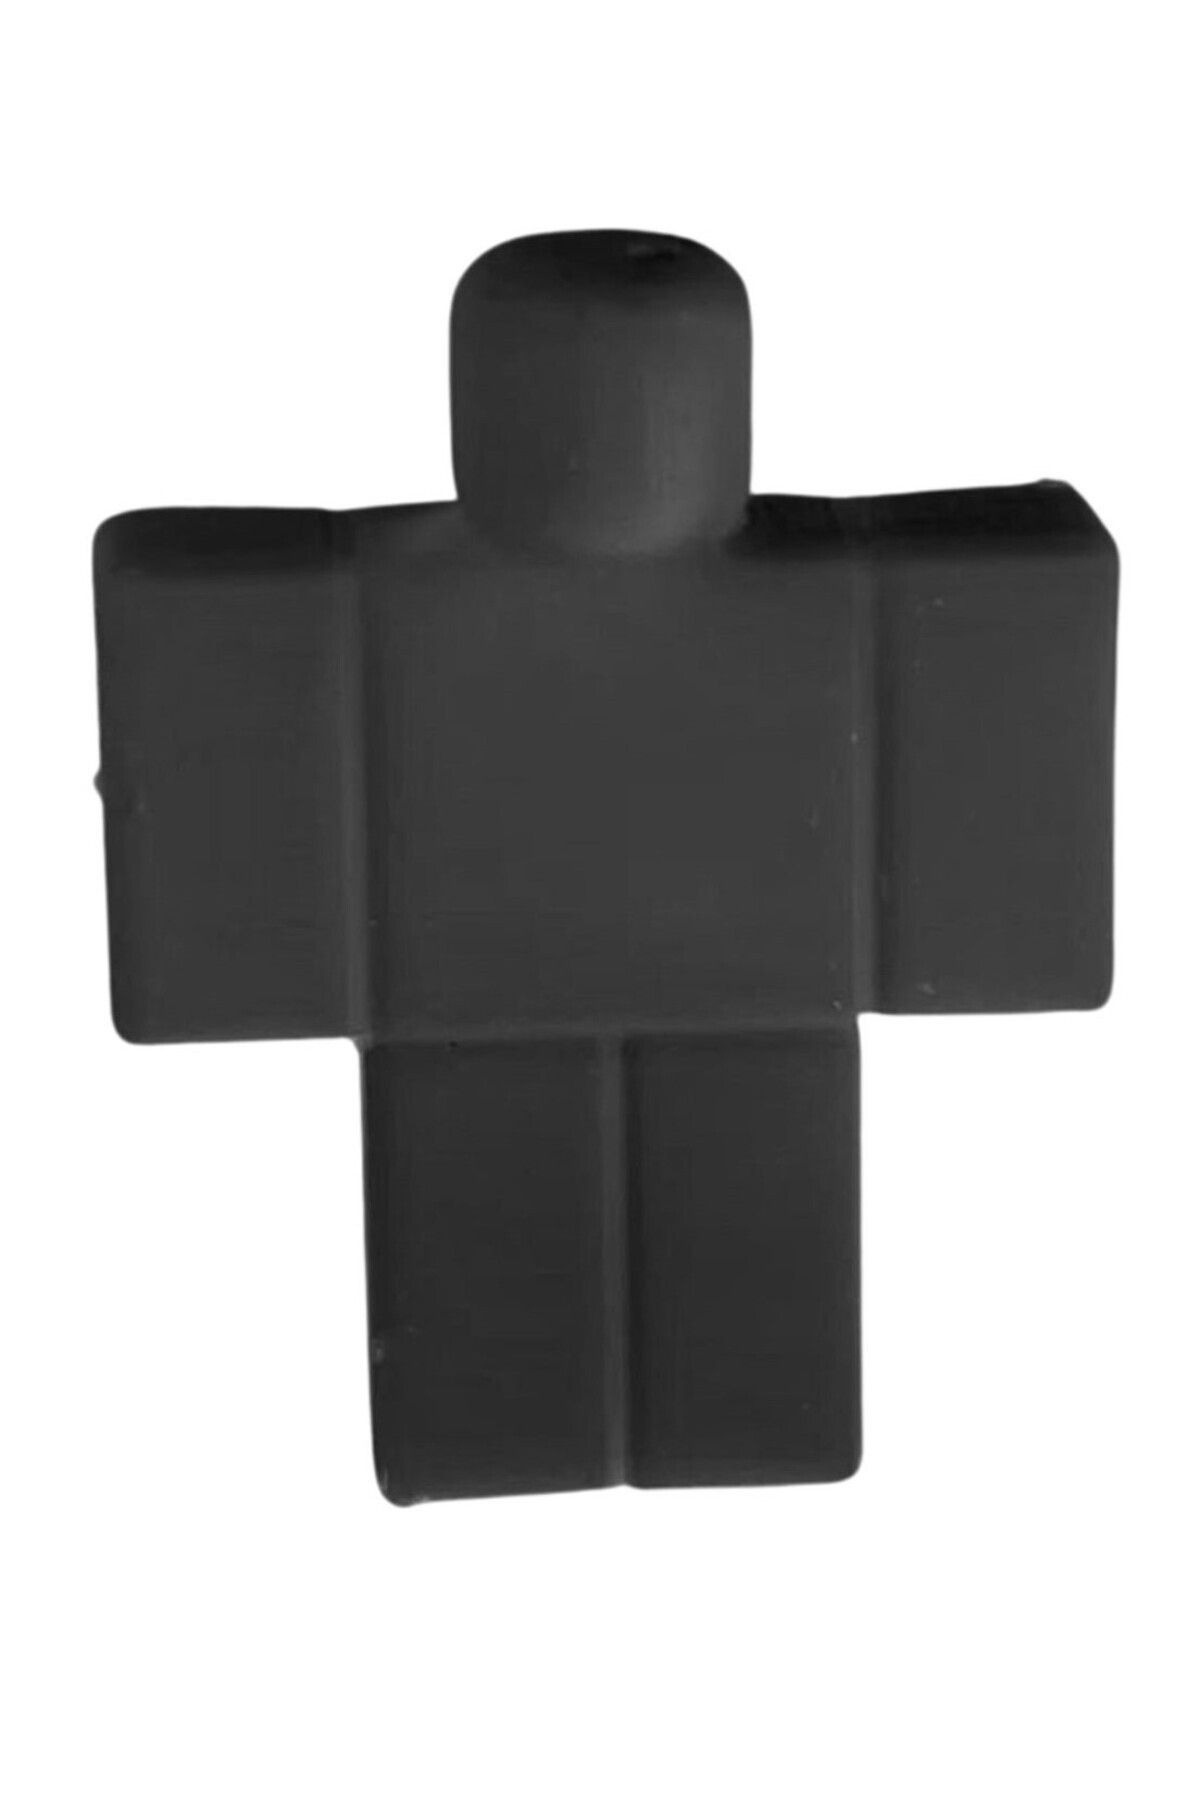 Biçim Vadisi - Roblox Karakter Figürü 6 X 7.65 X 1.8 Cm - 1 Adet Siyah Plastik Roblox Noob Karakter